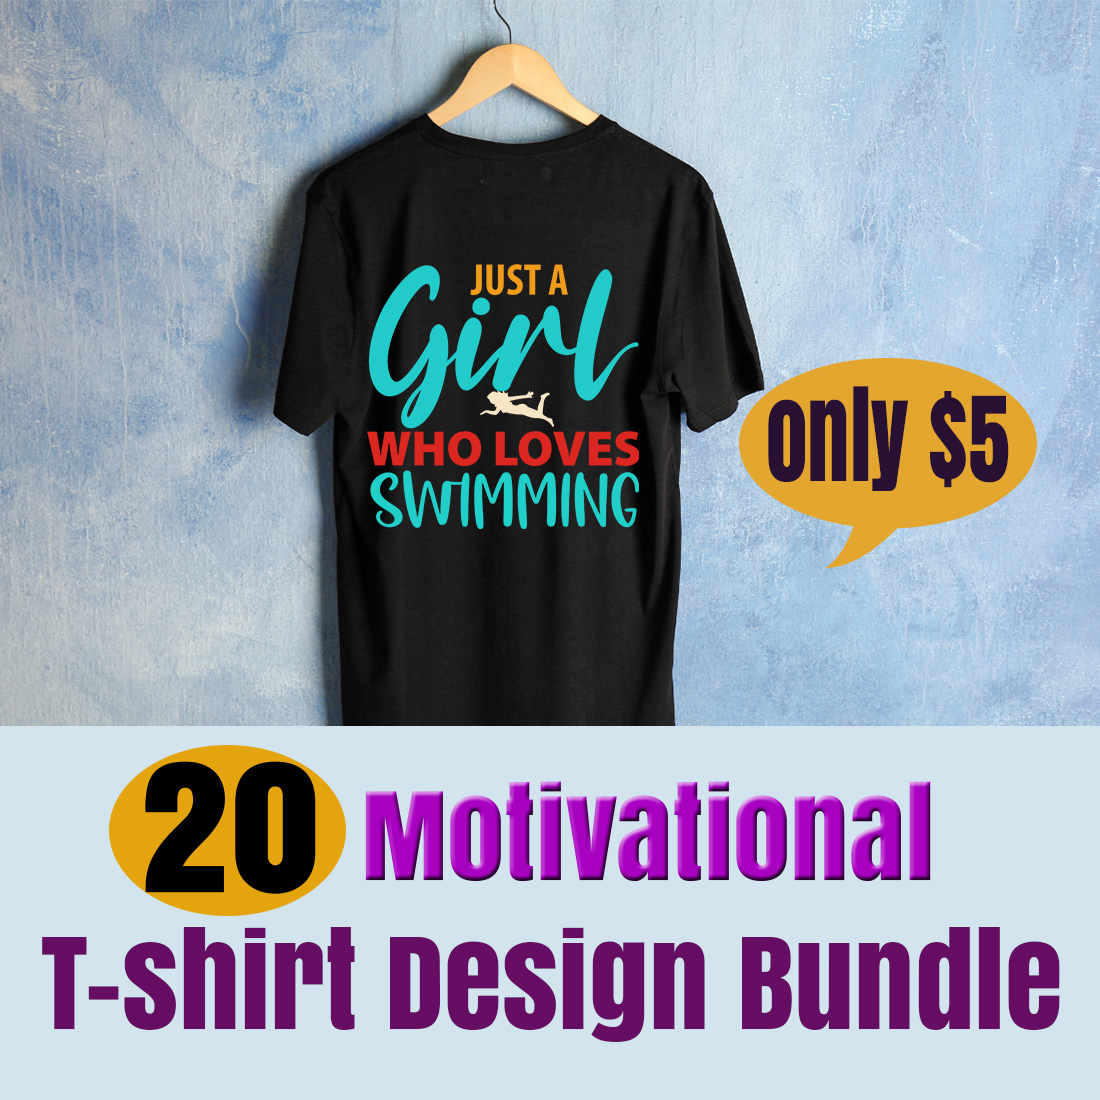 T-shirt Motivational SVG Design bundle cover image.